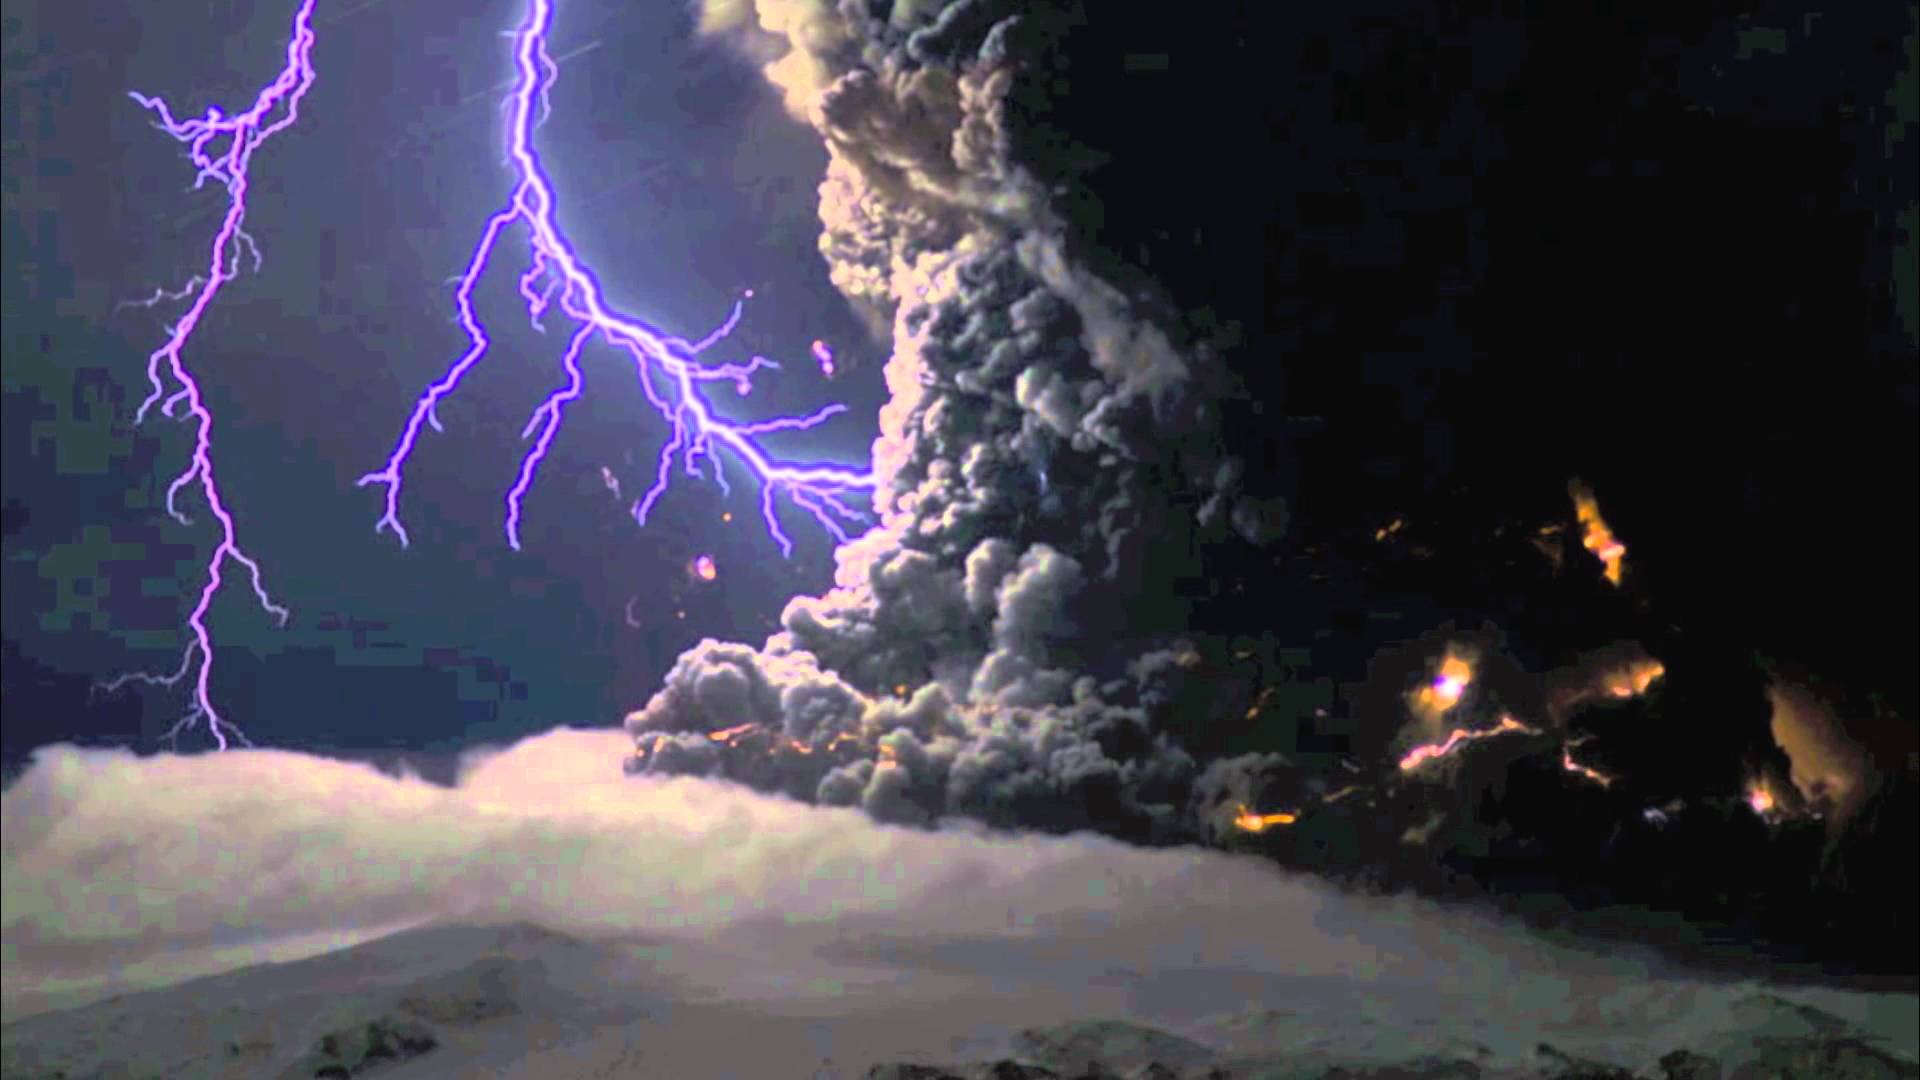 Displaying Image For Volcano Eruption Lightning